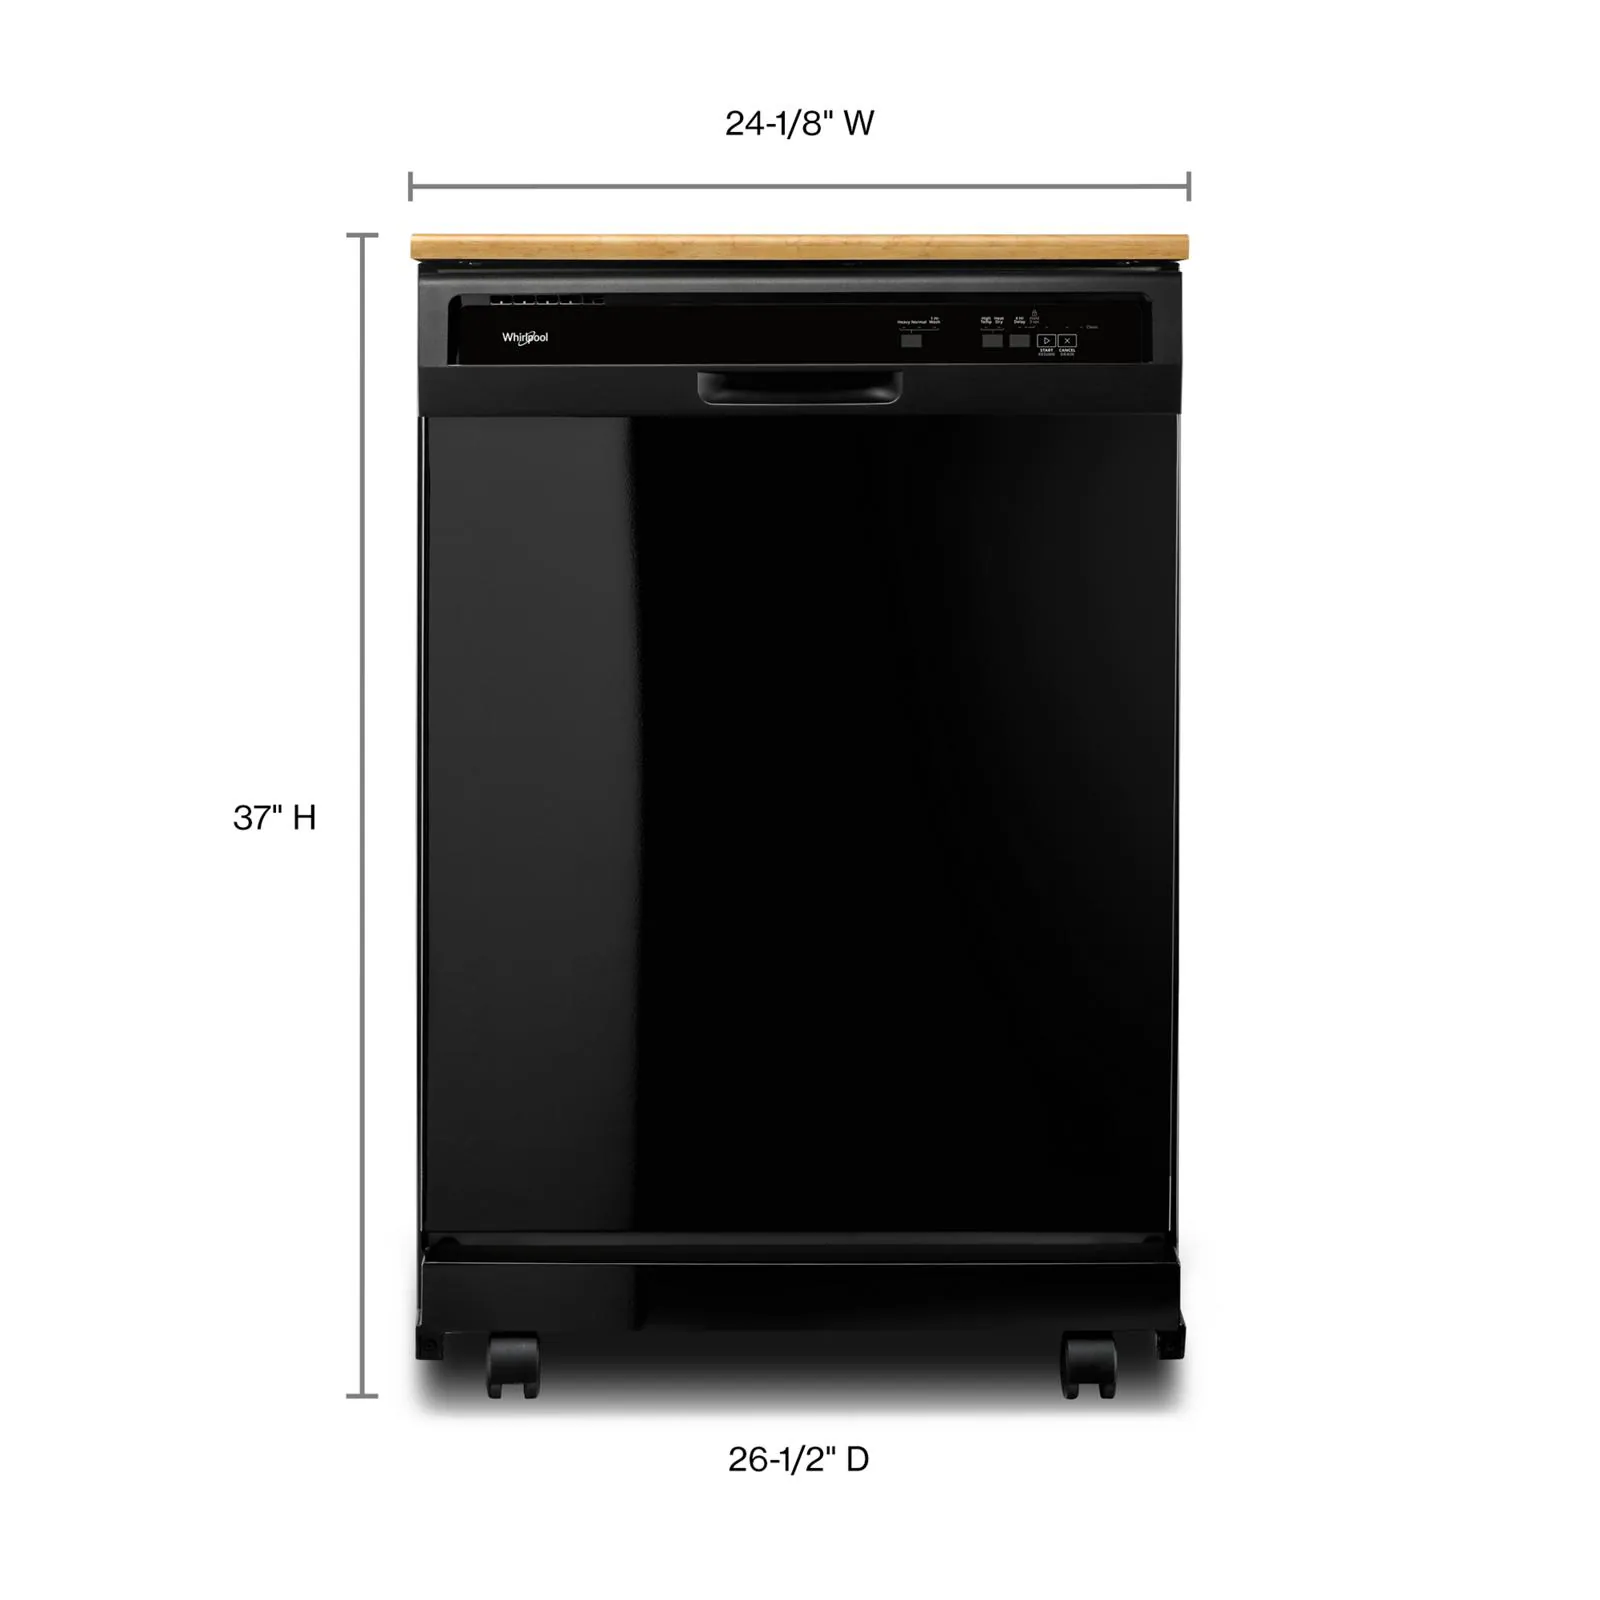 Ecotime DSR 15B K Dishwasher